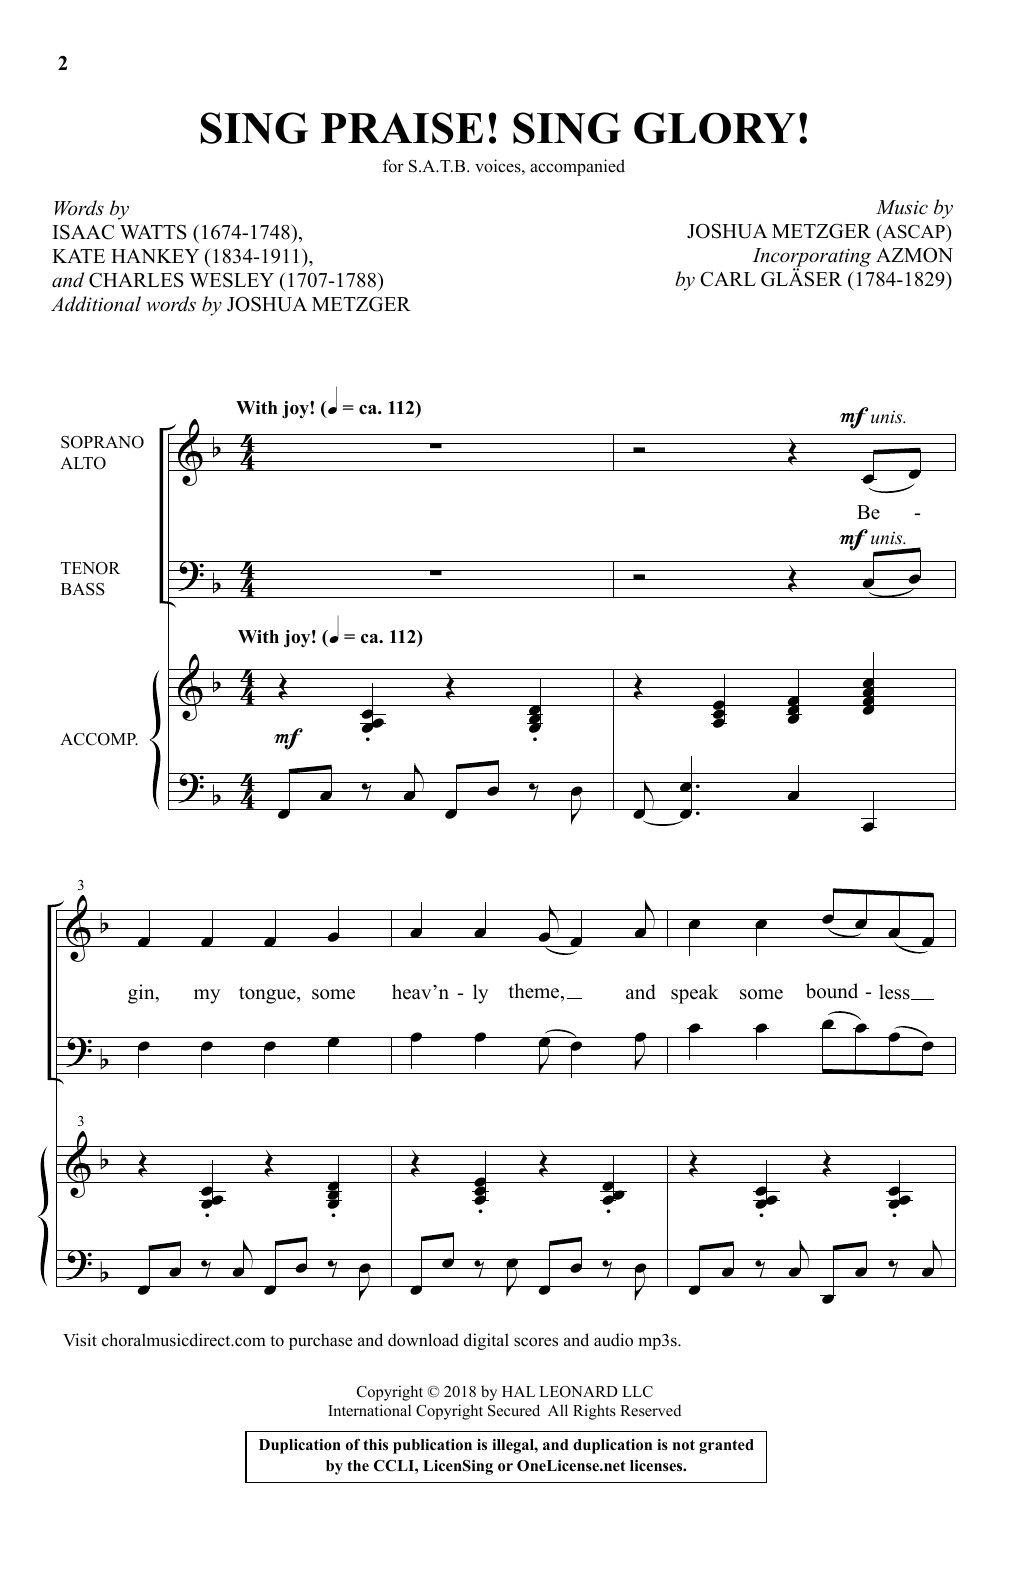 Joshua Metzger Sing Praise! Sing Glory! Sheet Music Notes & Chords for SATB Choir - Download or Print PDF